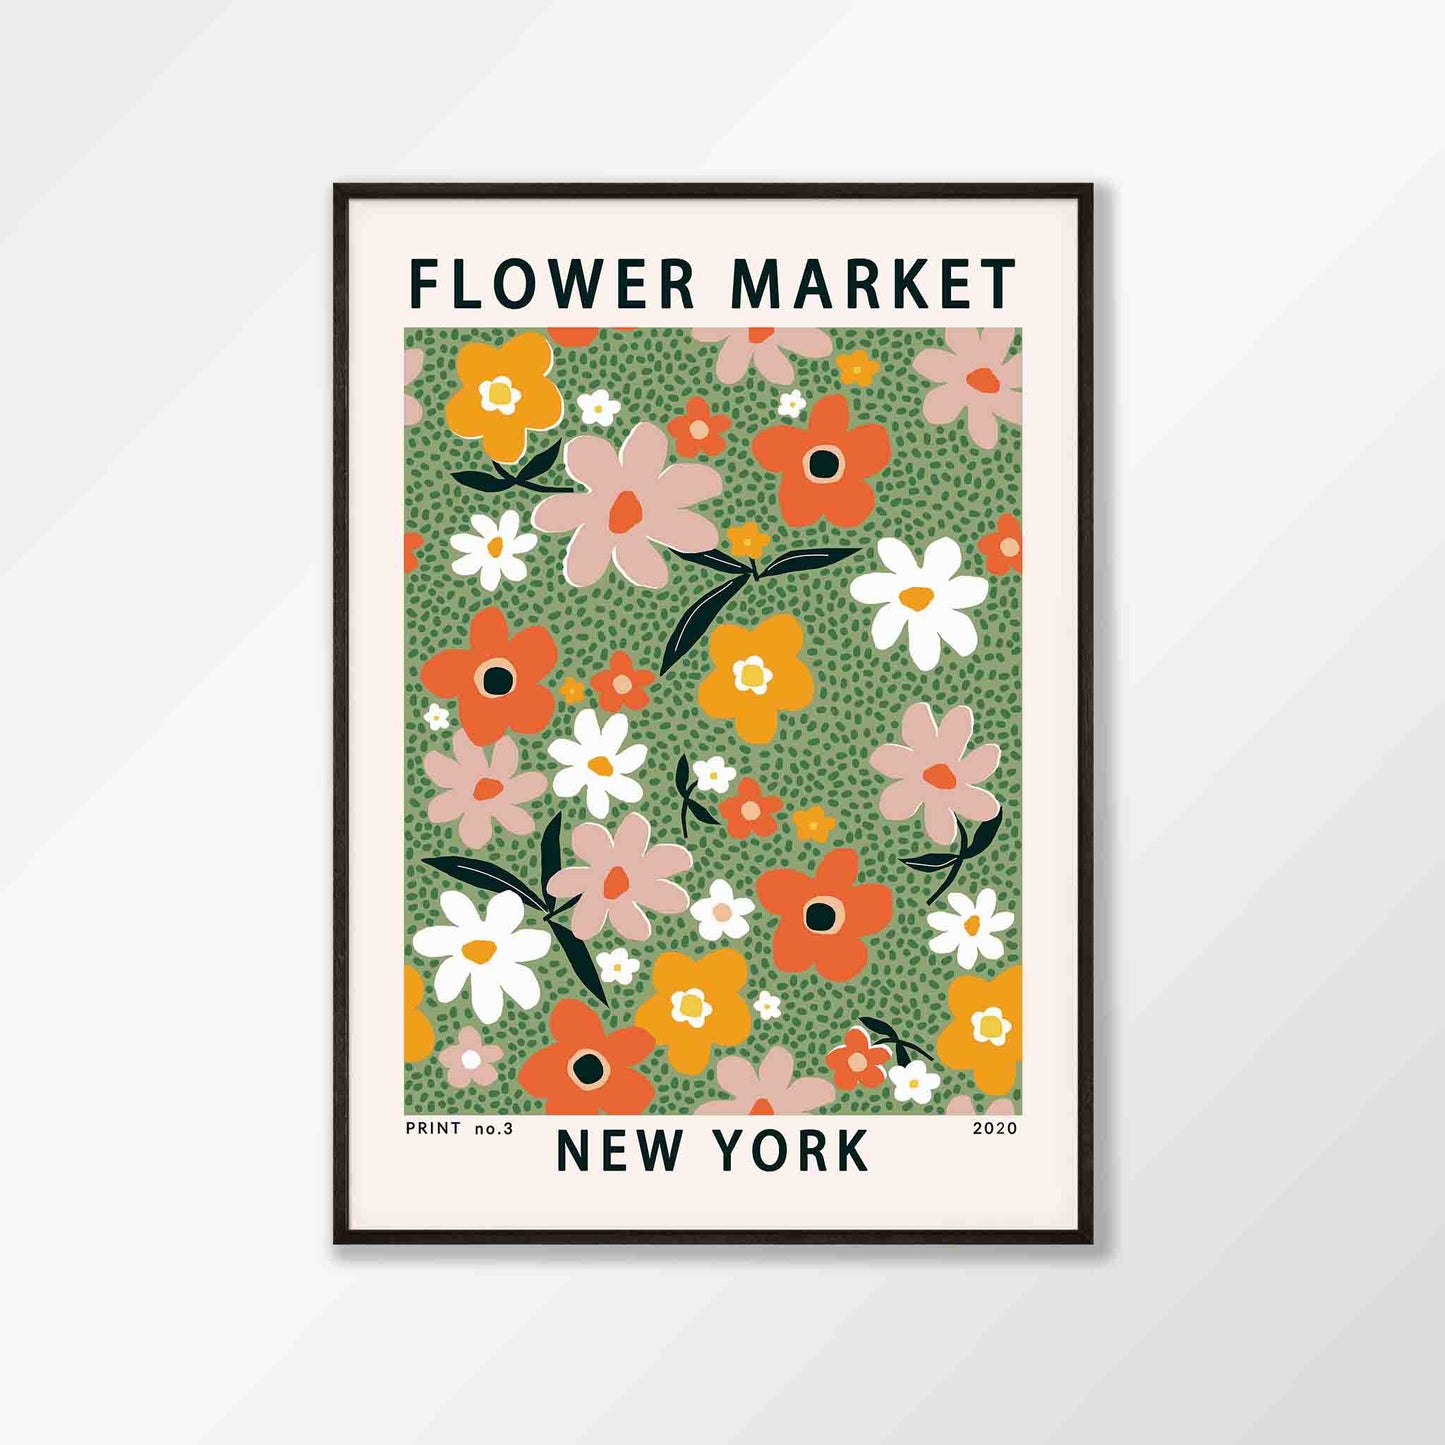 New York Flower Market